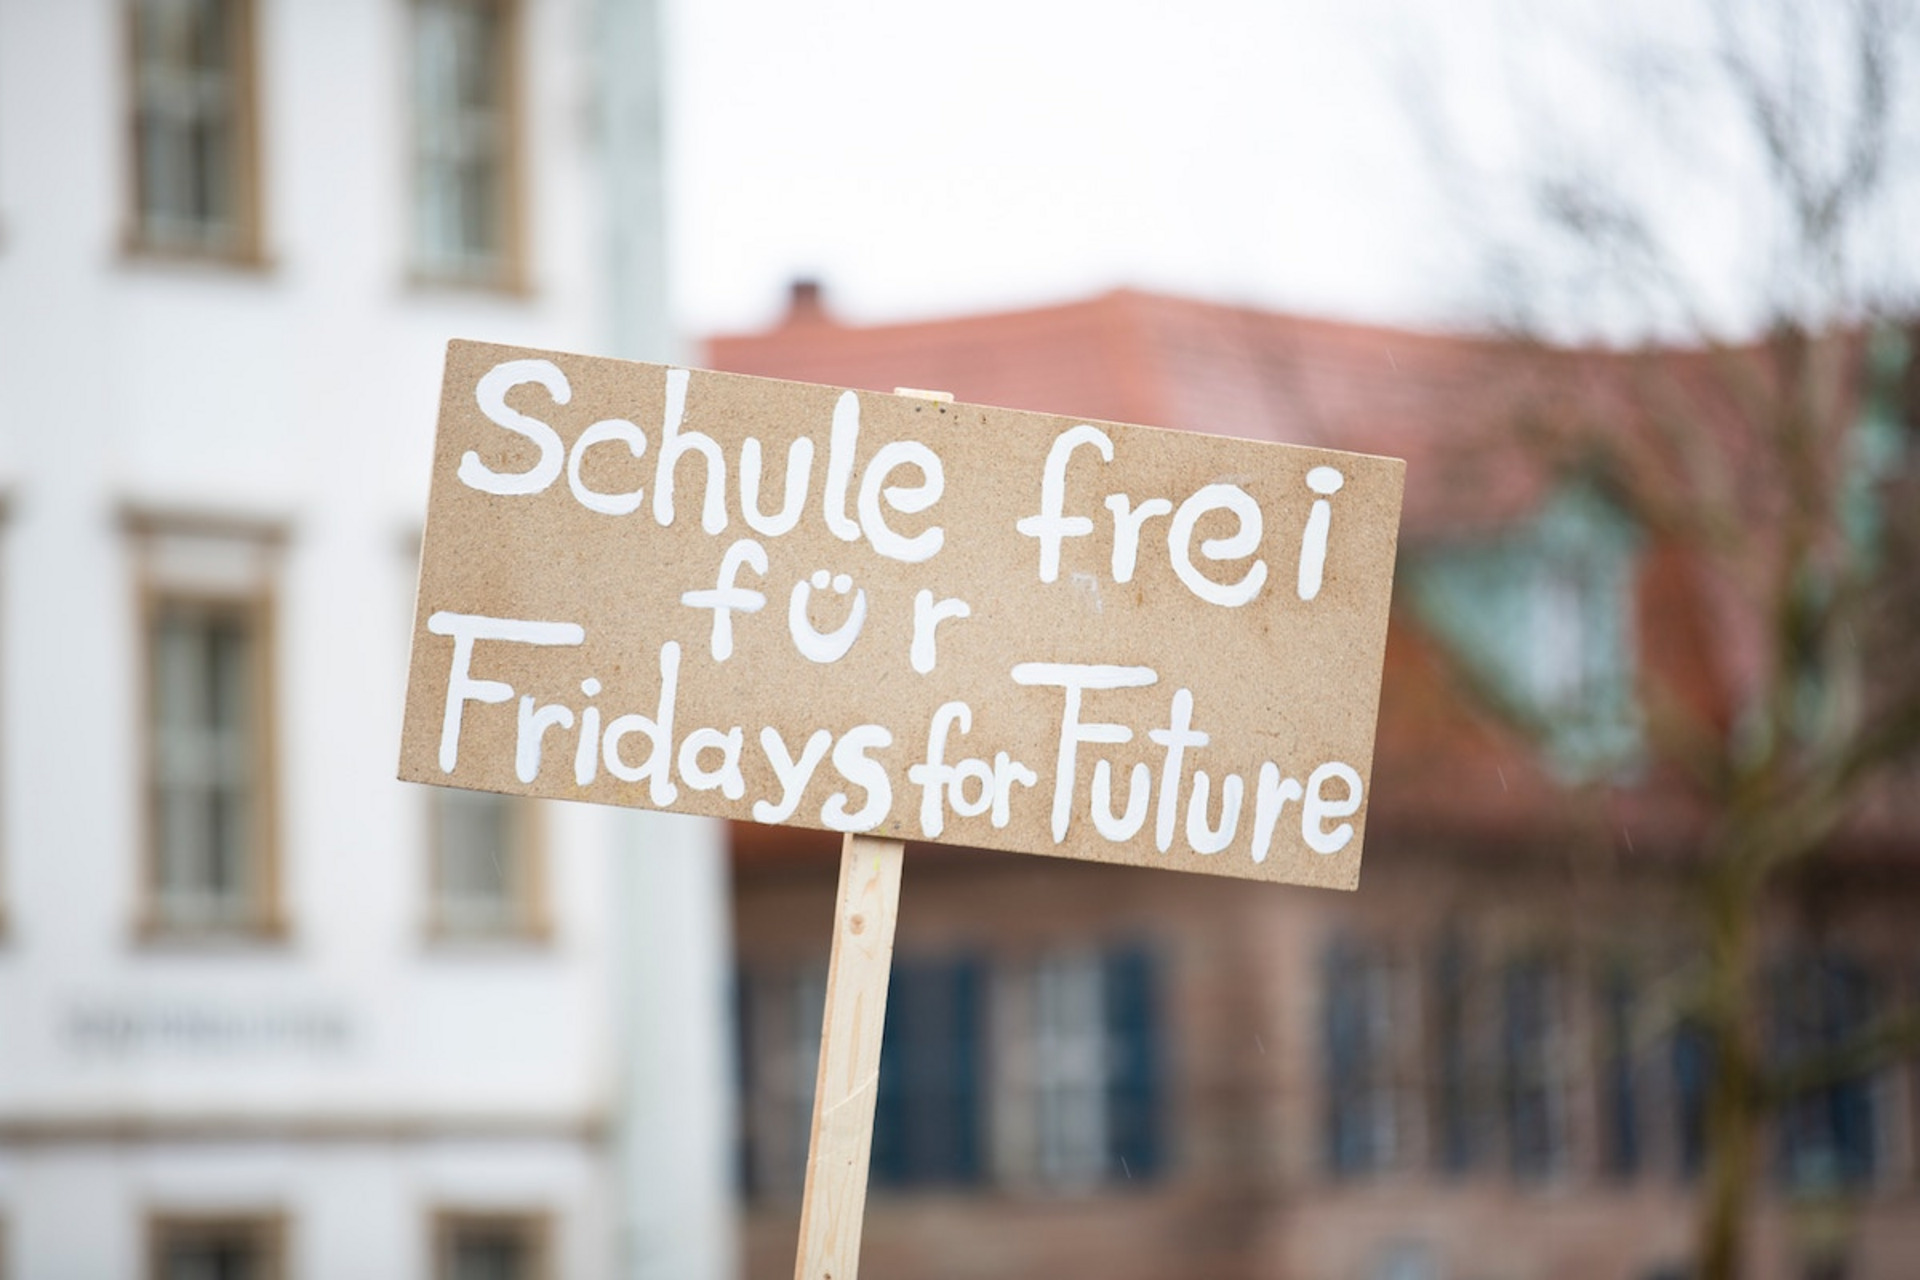 Ein Schild mit dem Text "Schule frei für Fridays for Future"